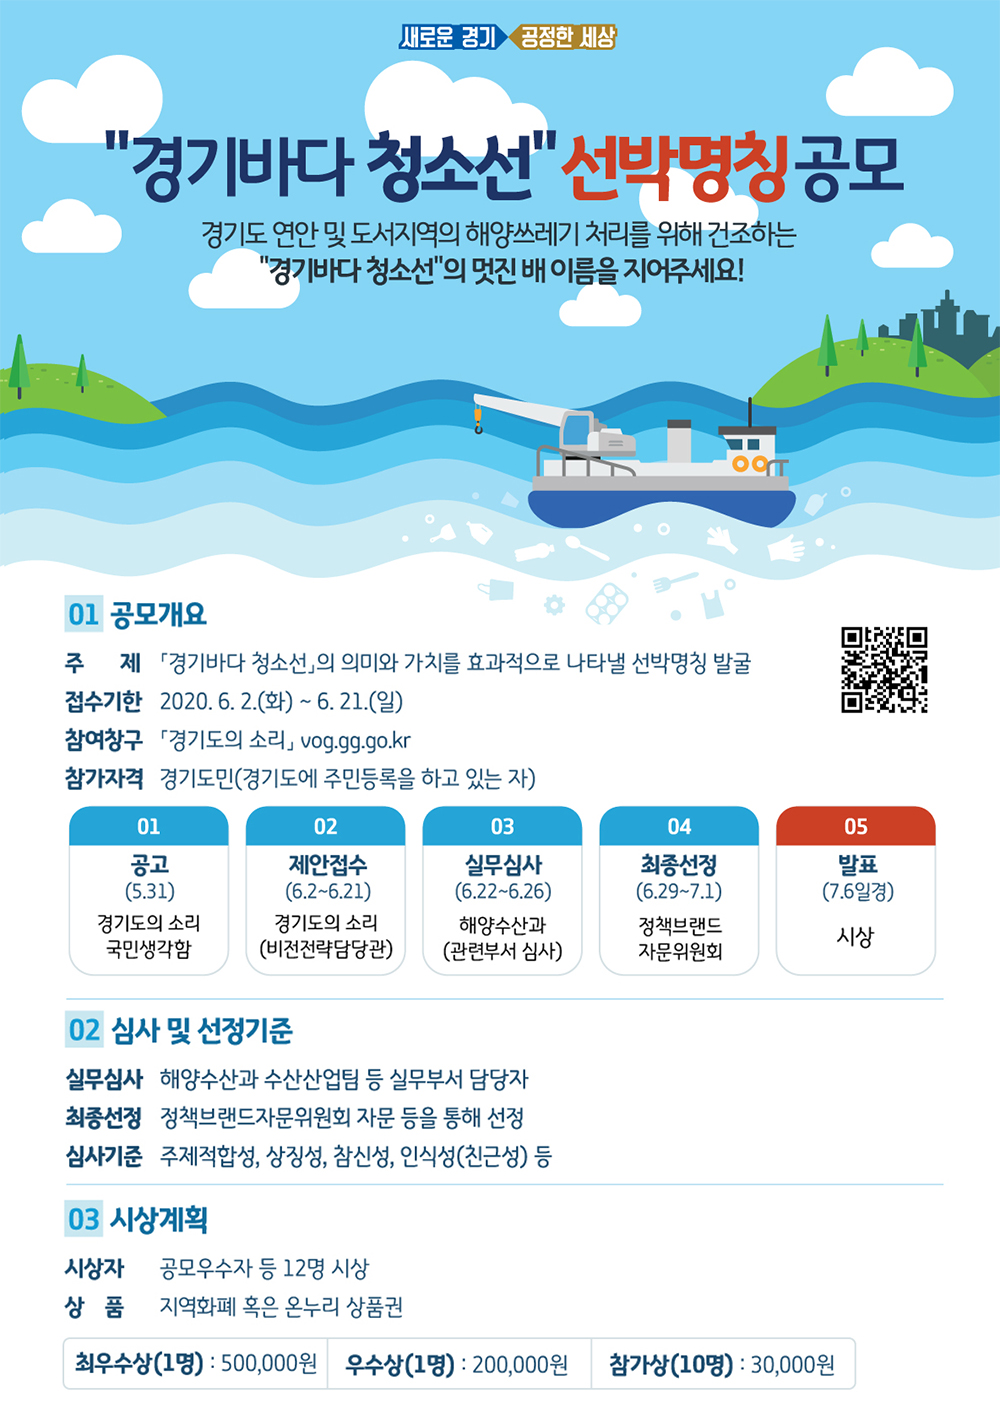 경기바다 청소선 선박명칭 공모전 포스터